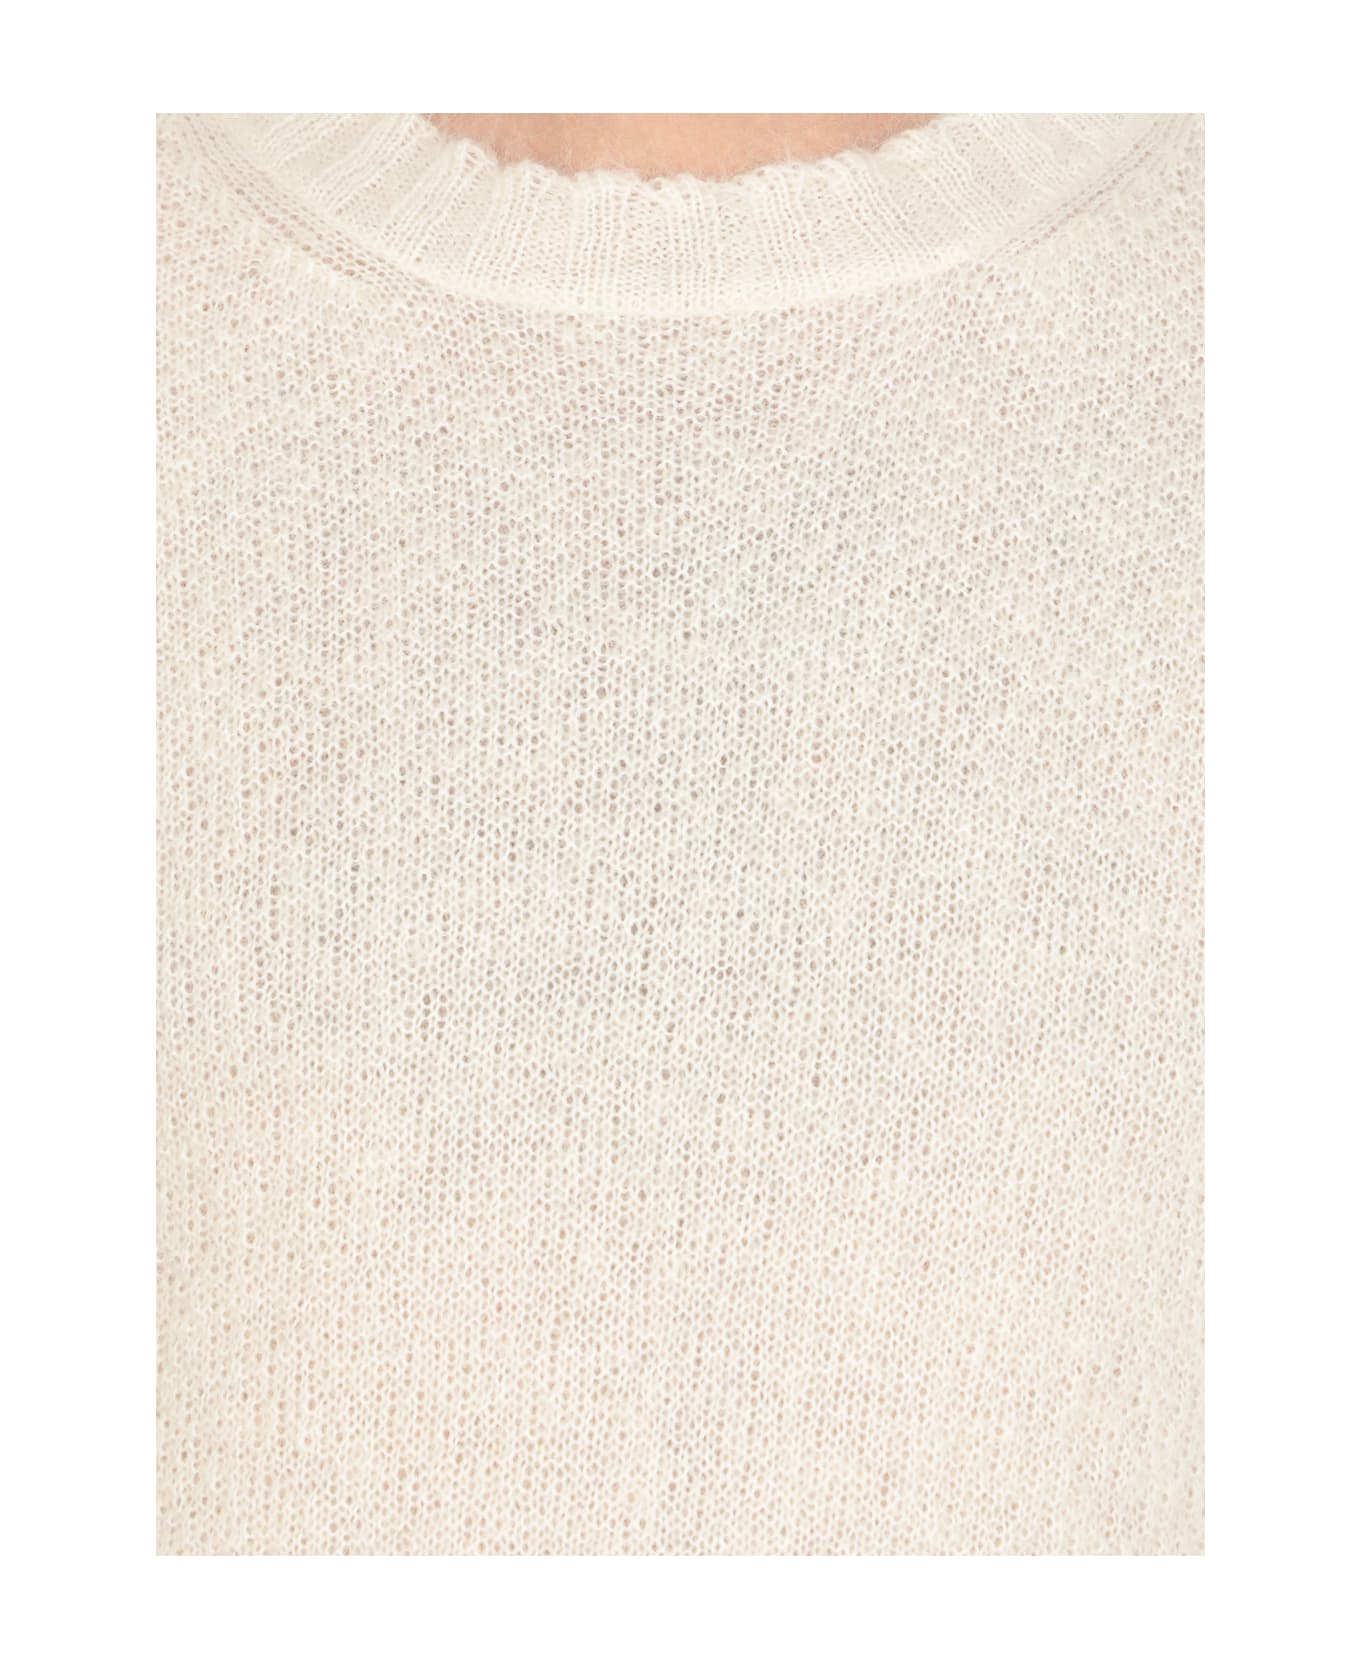 Jil Sander Milk Mohair Blend Sweater - Ivory ニットウェア